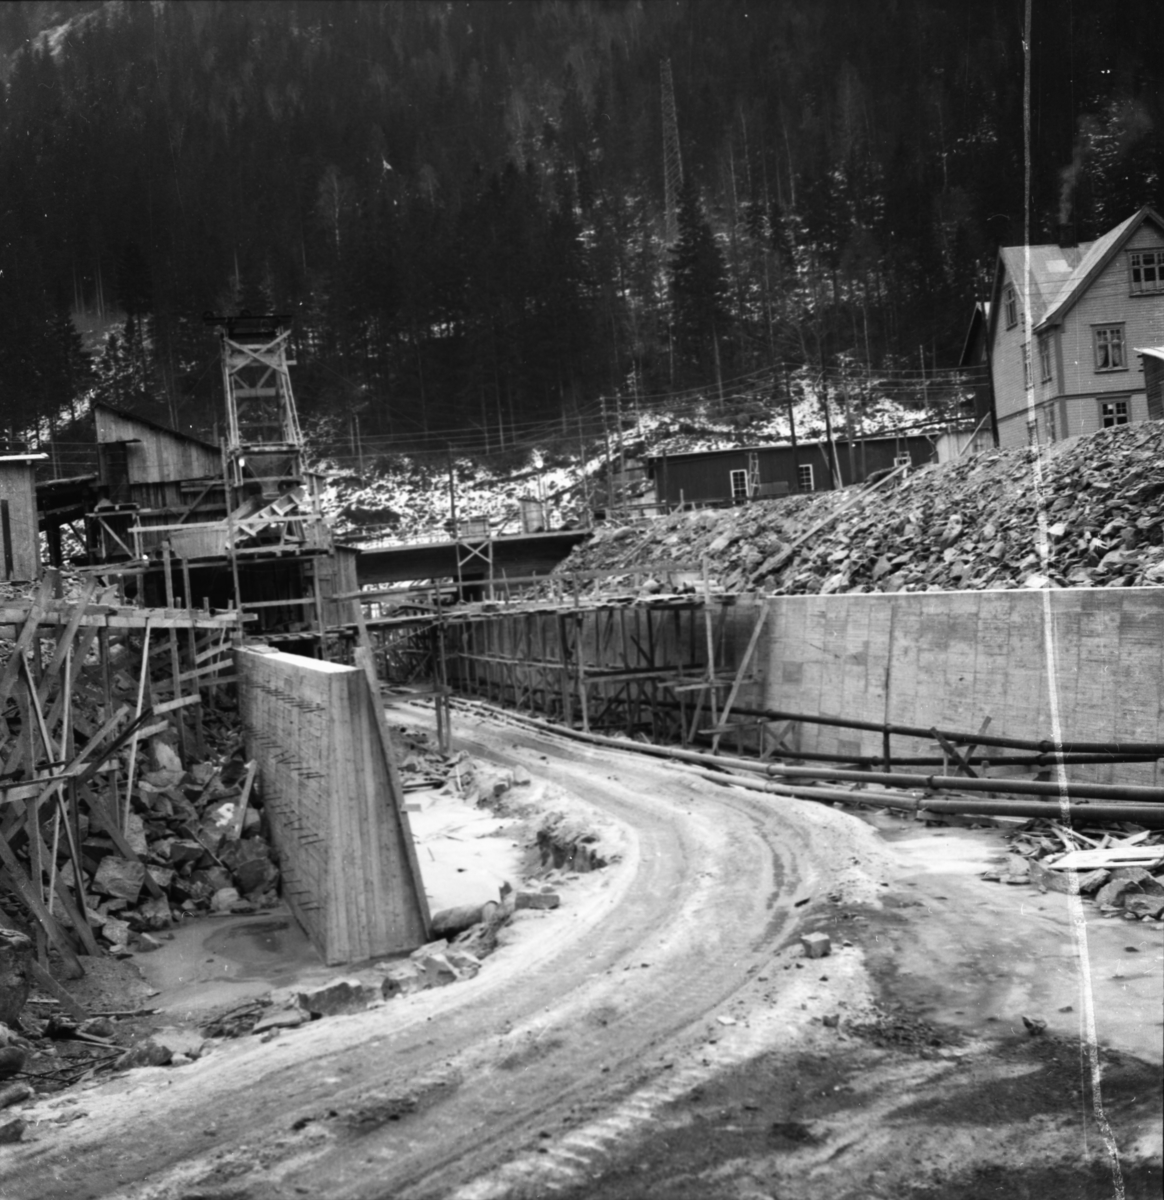 Vardens arkiv. "Utbygging av kraftstasjon. Rjukan III" 06.01.1954